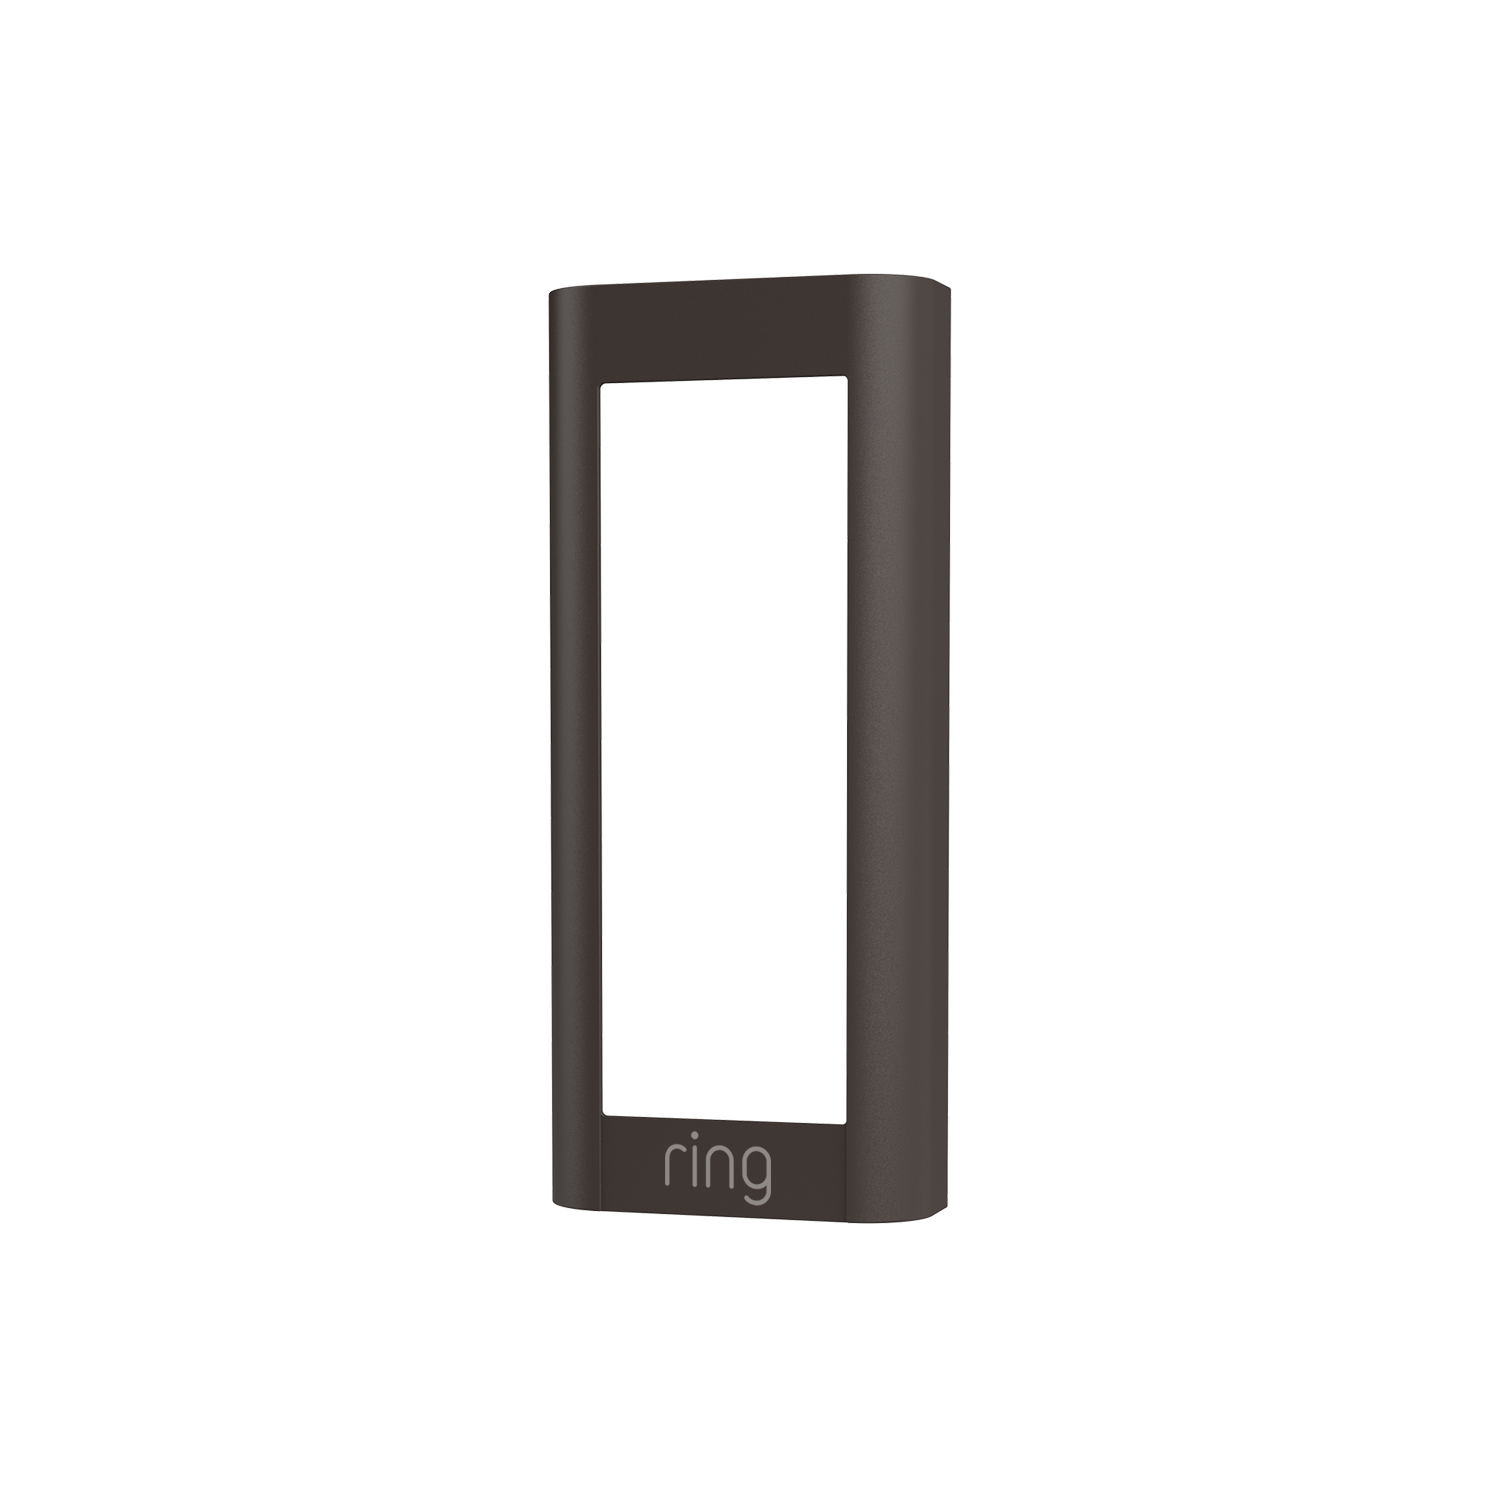 Interchangeable Faceplate (for Wired Doorbell Pro (Video Doorbell Pro 2)) - Mocha Brown